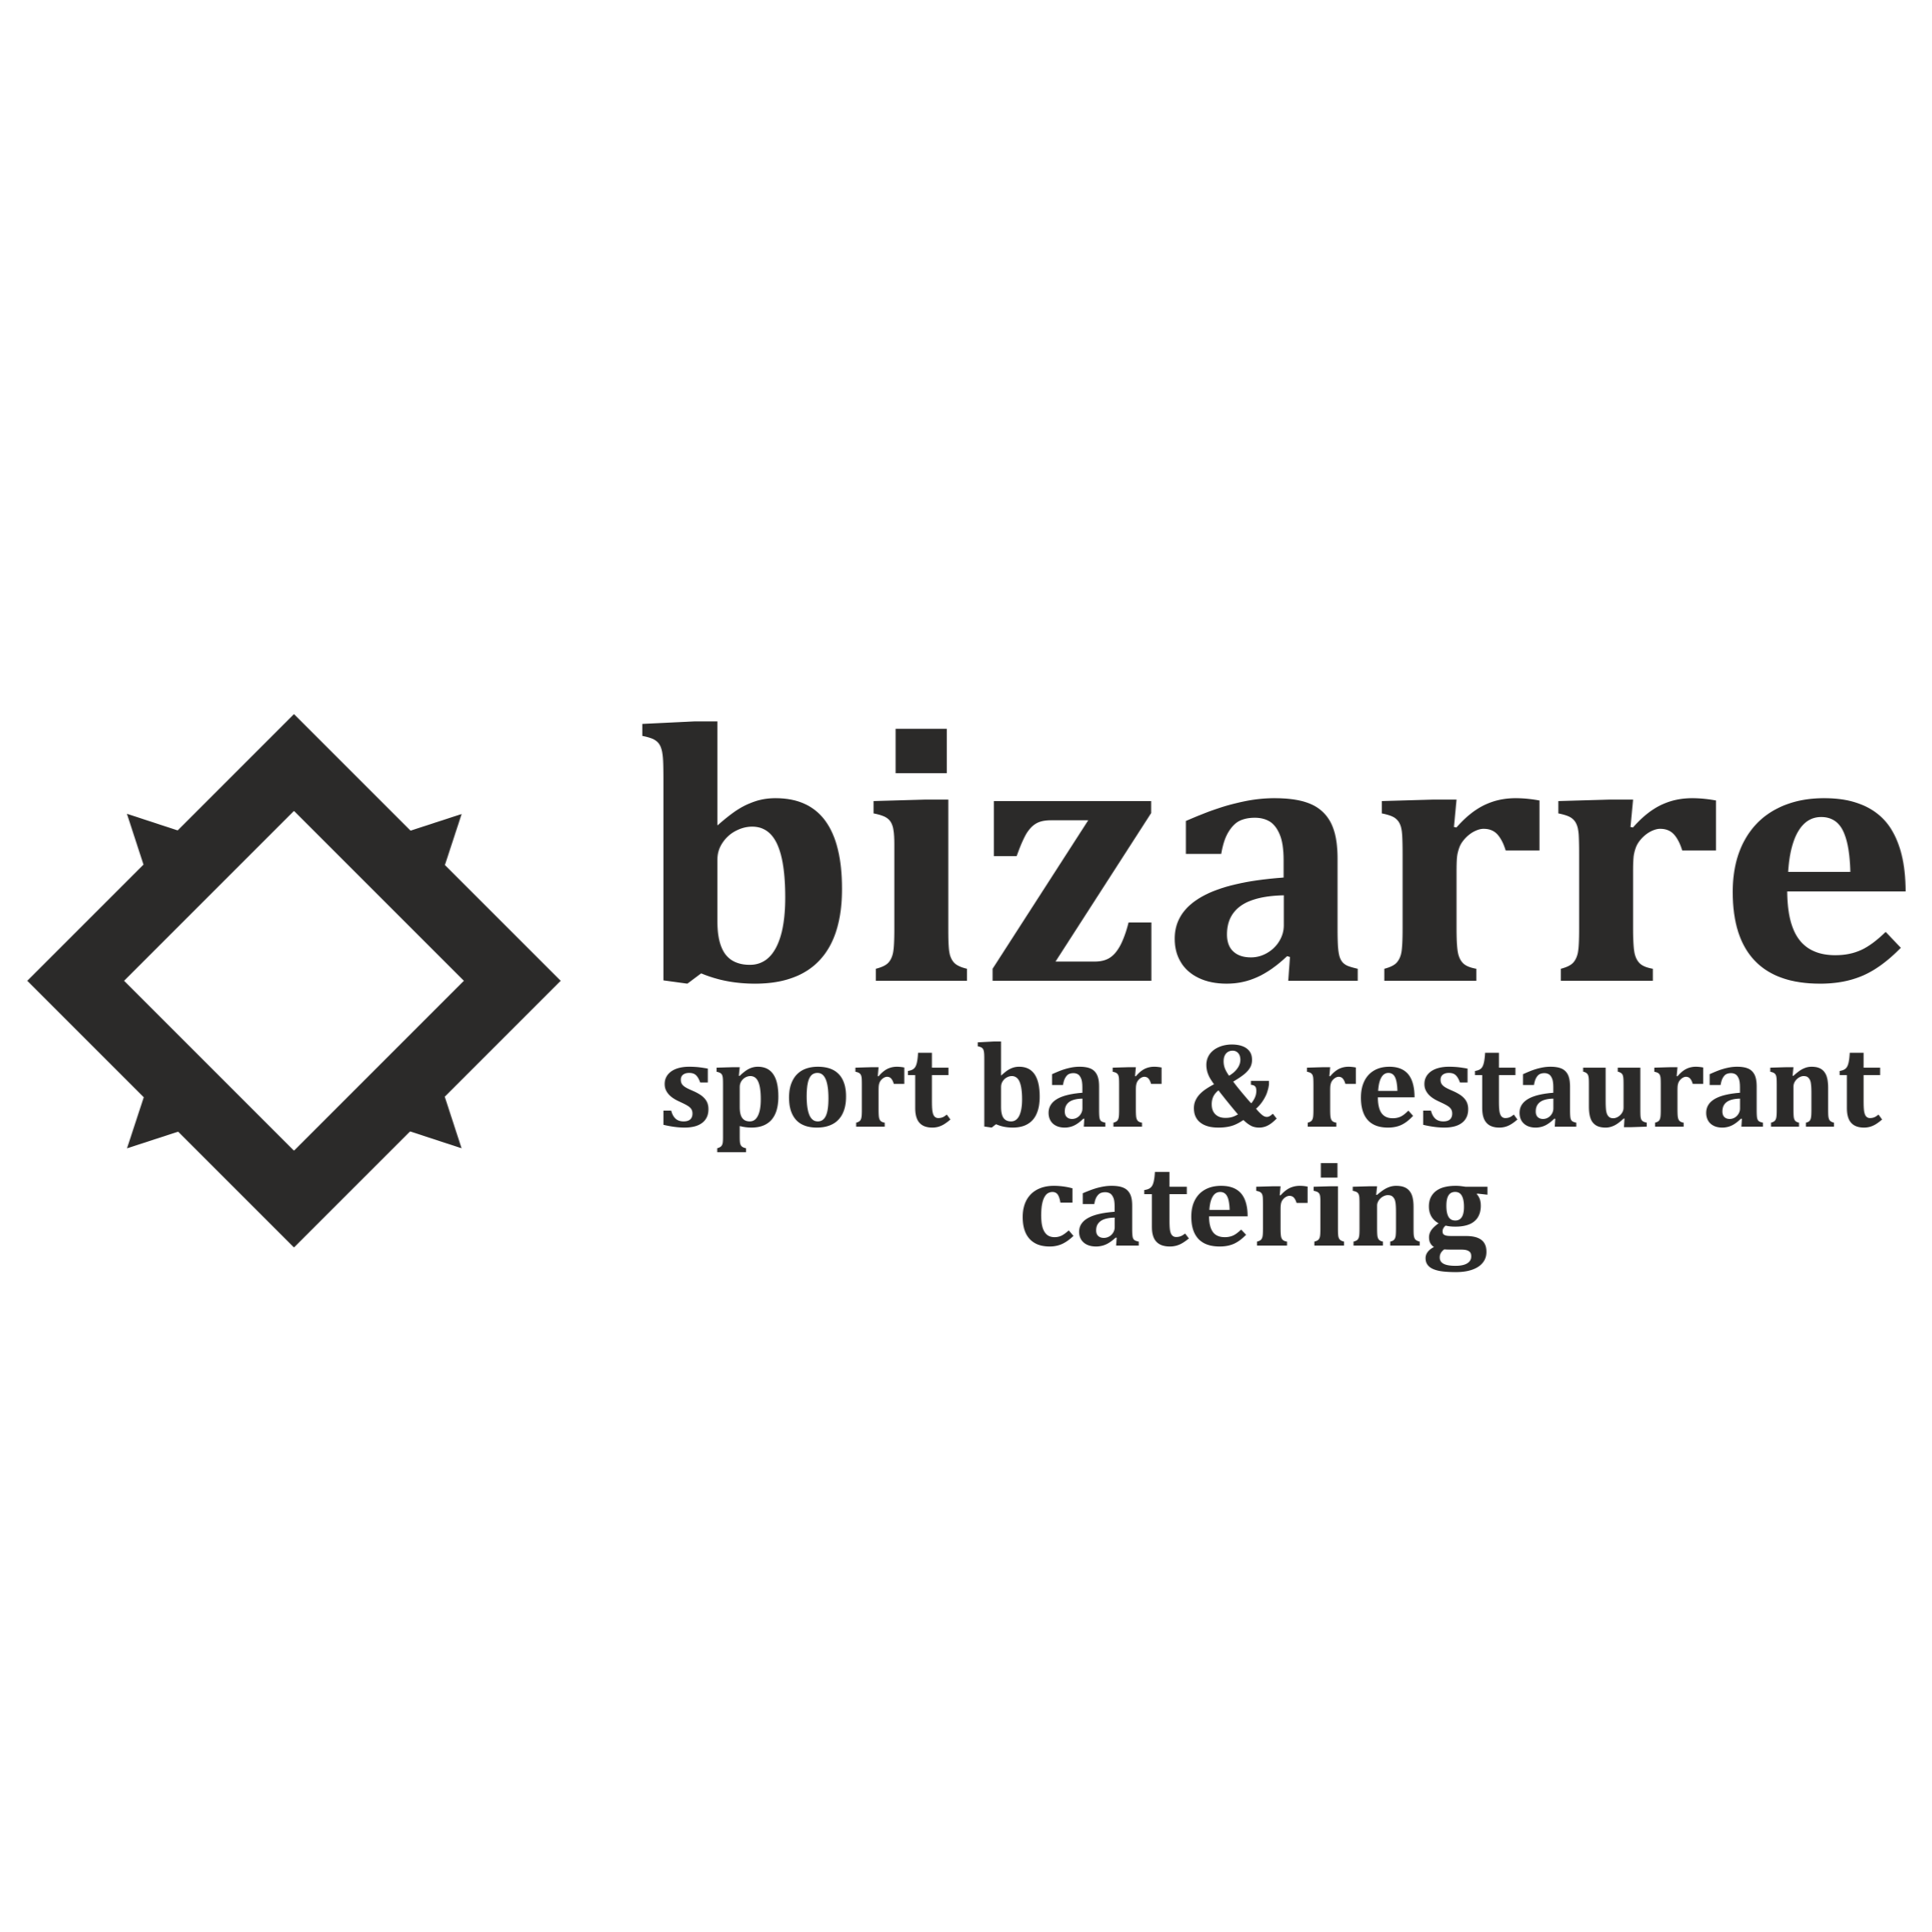 BIZARRE - sport bar & restaurant